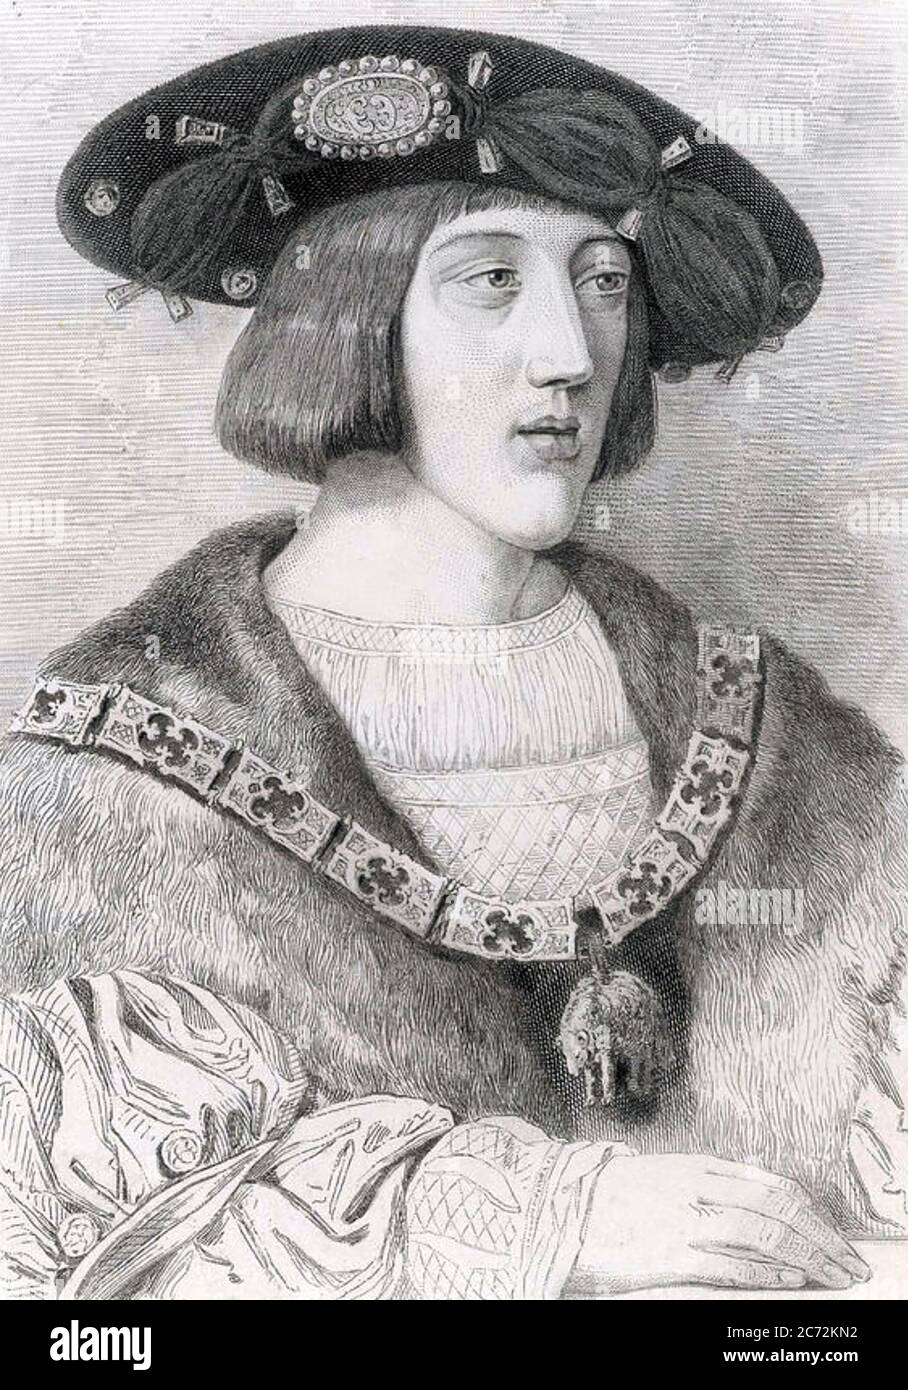 CHARLES V, Holy Roman Emperor (1500-1558) Stock Photo